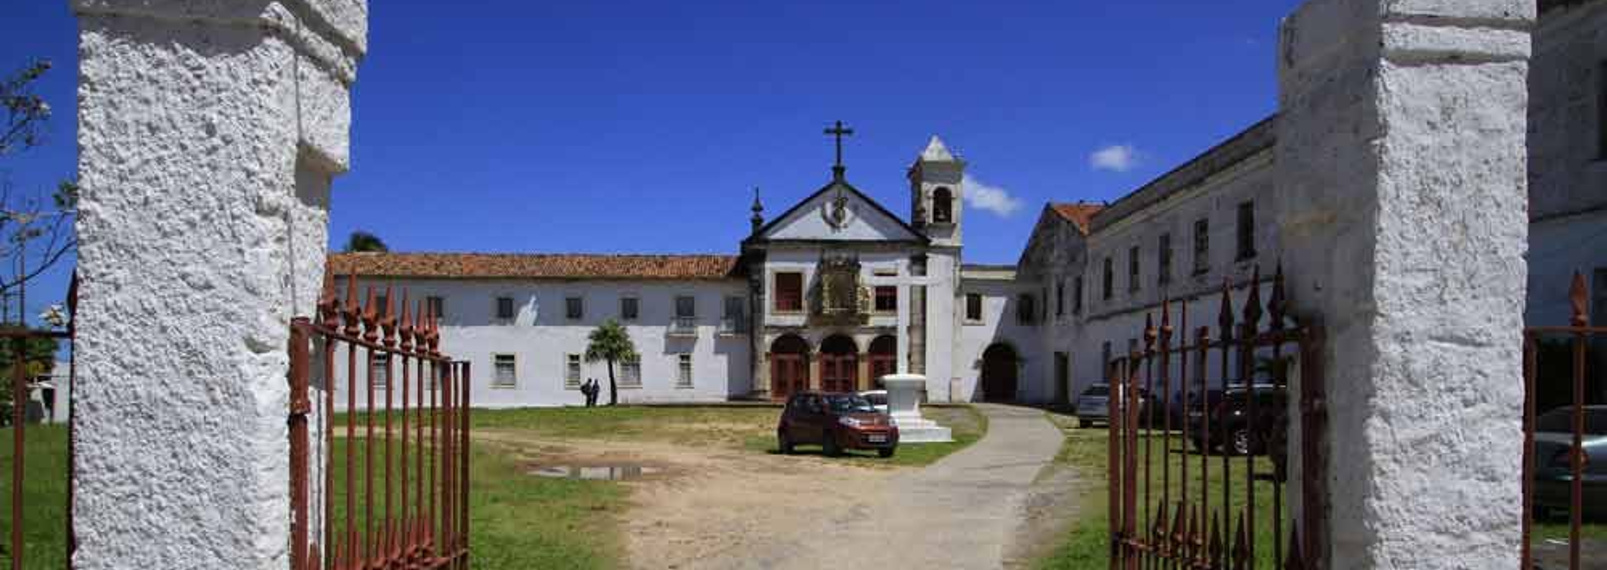 Santa Tereza liegt in Olinda, einem wunderschönen Vorort